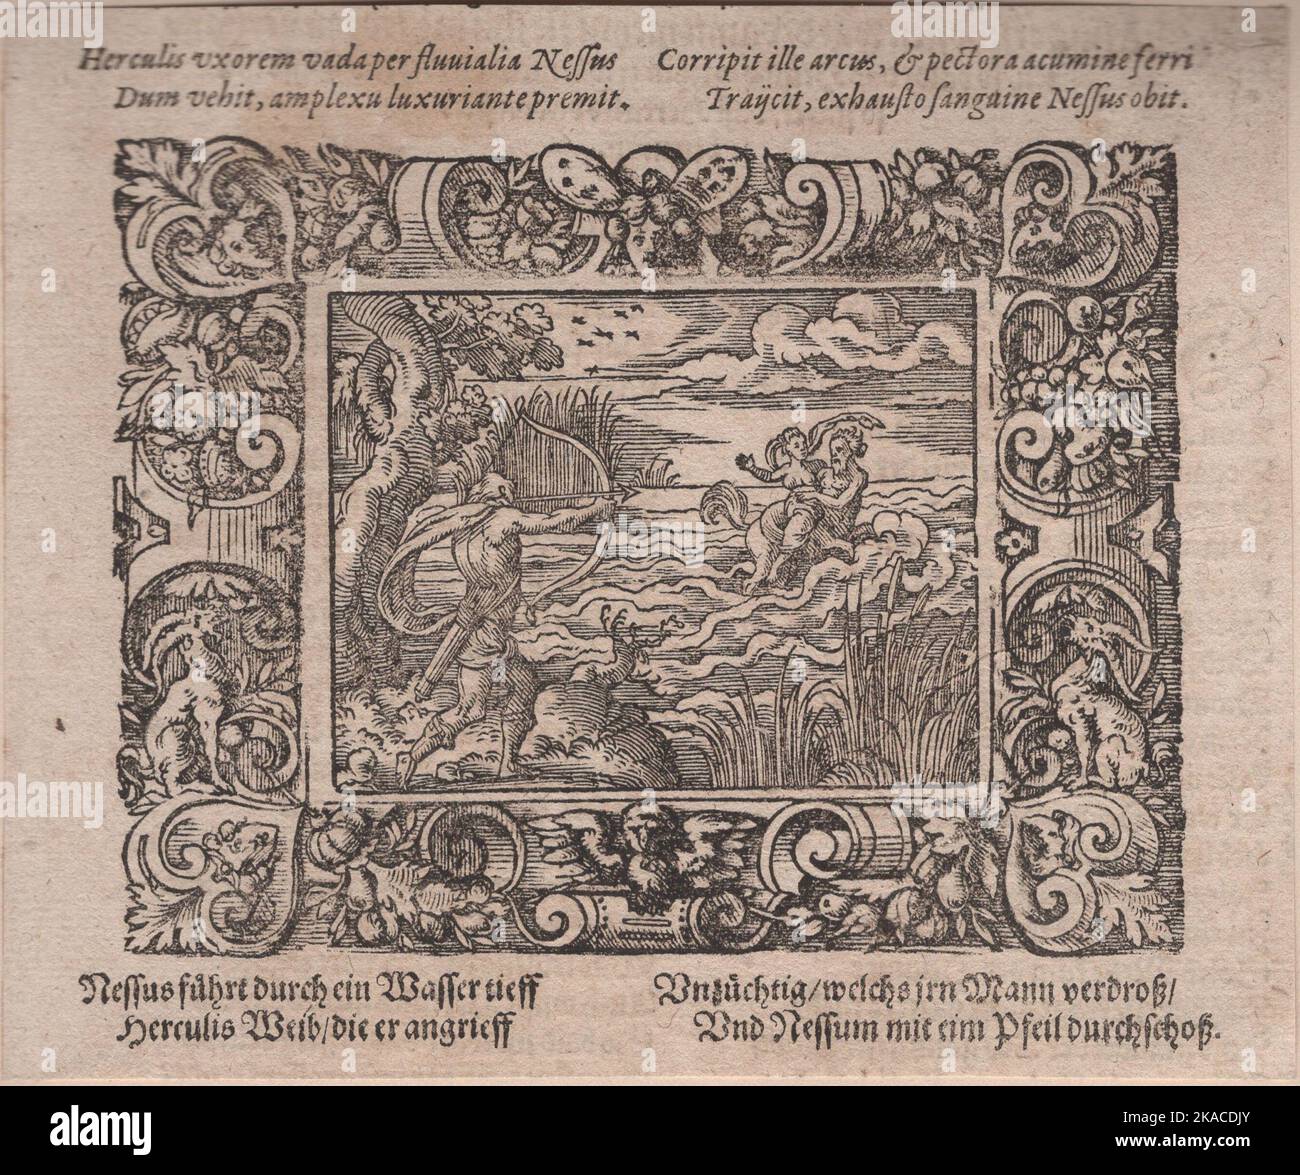 Originale Ovidio - Metamorphoses illustrazione 16th ° secolo Foto Stock